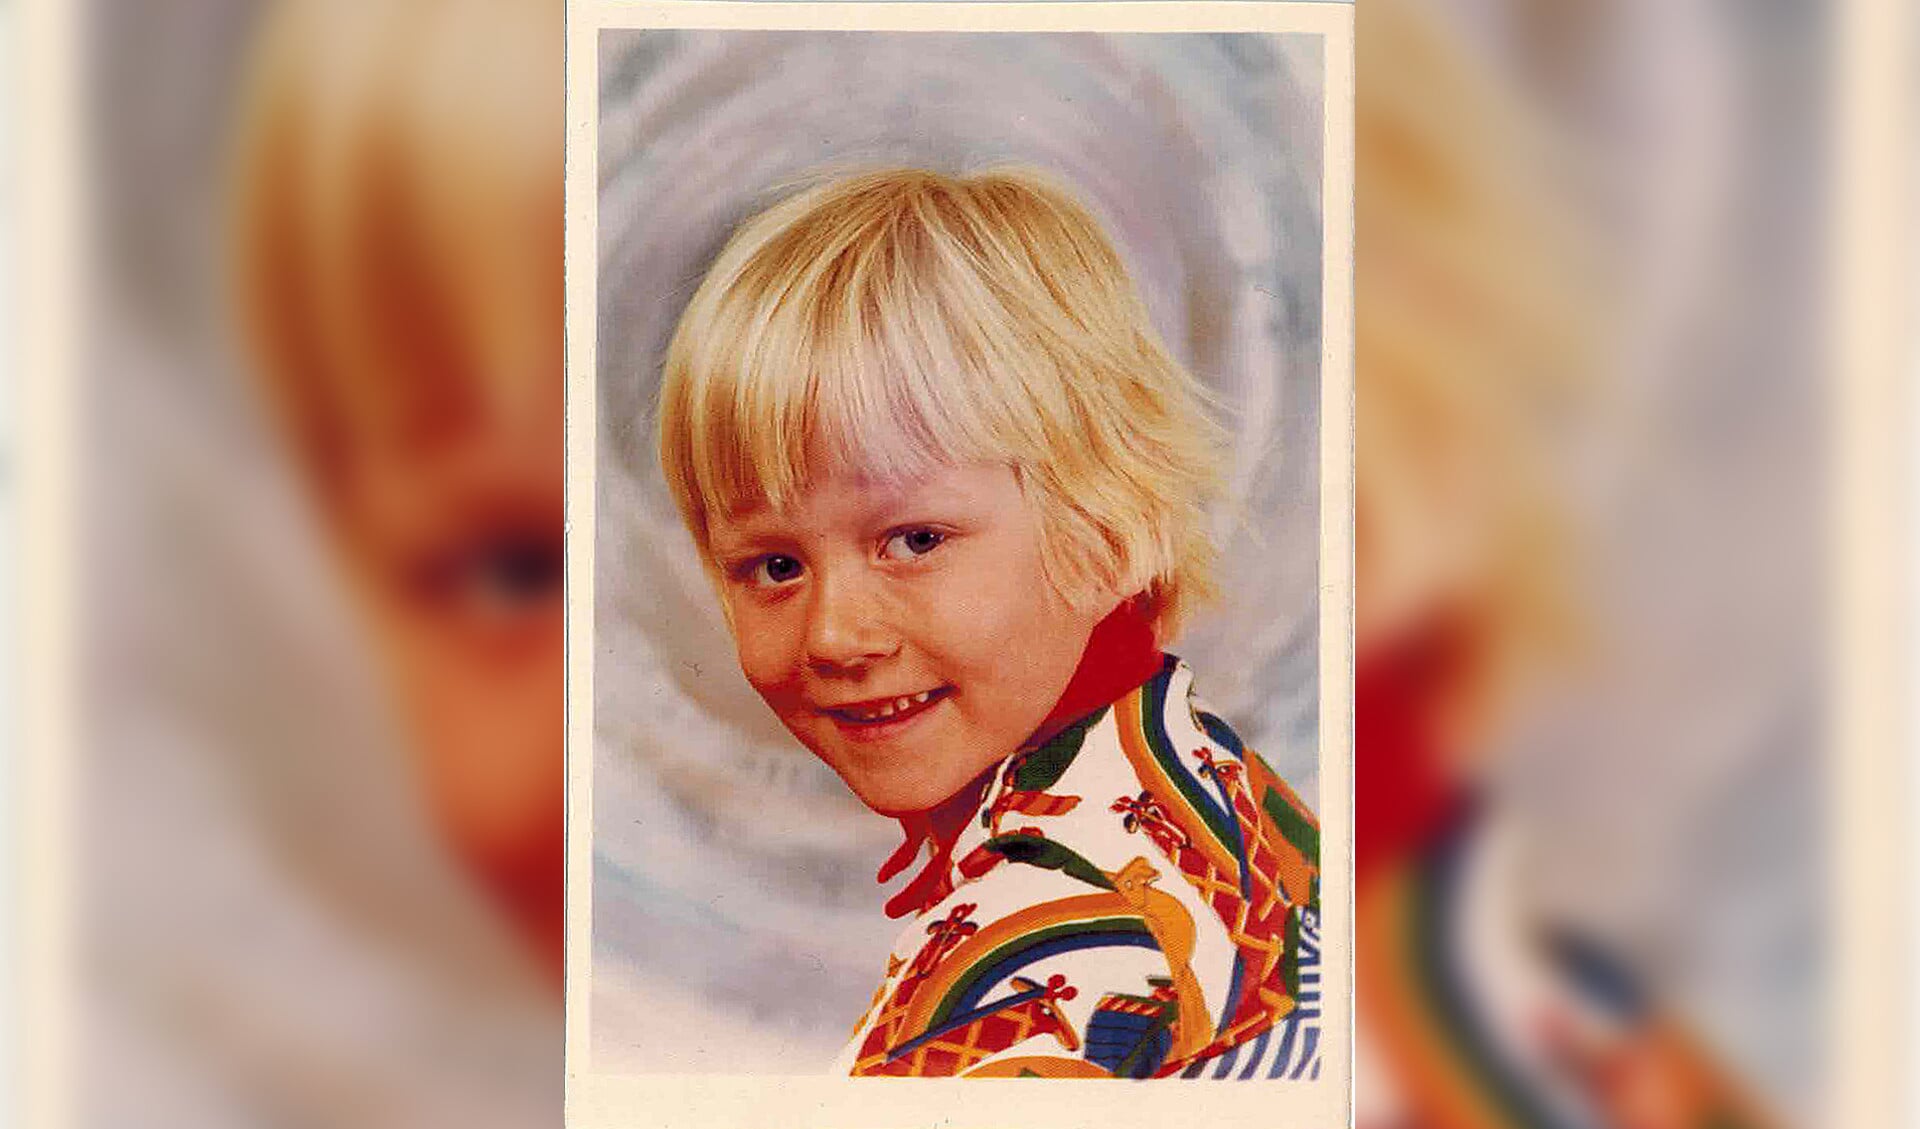 ‘Hier ben ik vijf jaar oud.  Dit was mijn mooiste trui en daarmee wilde ik graag op de foto